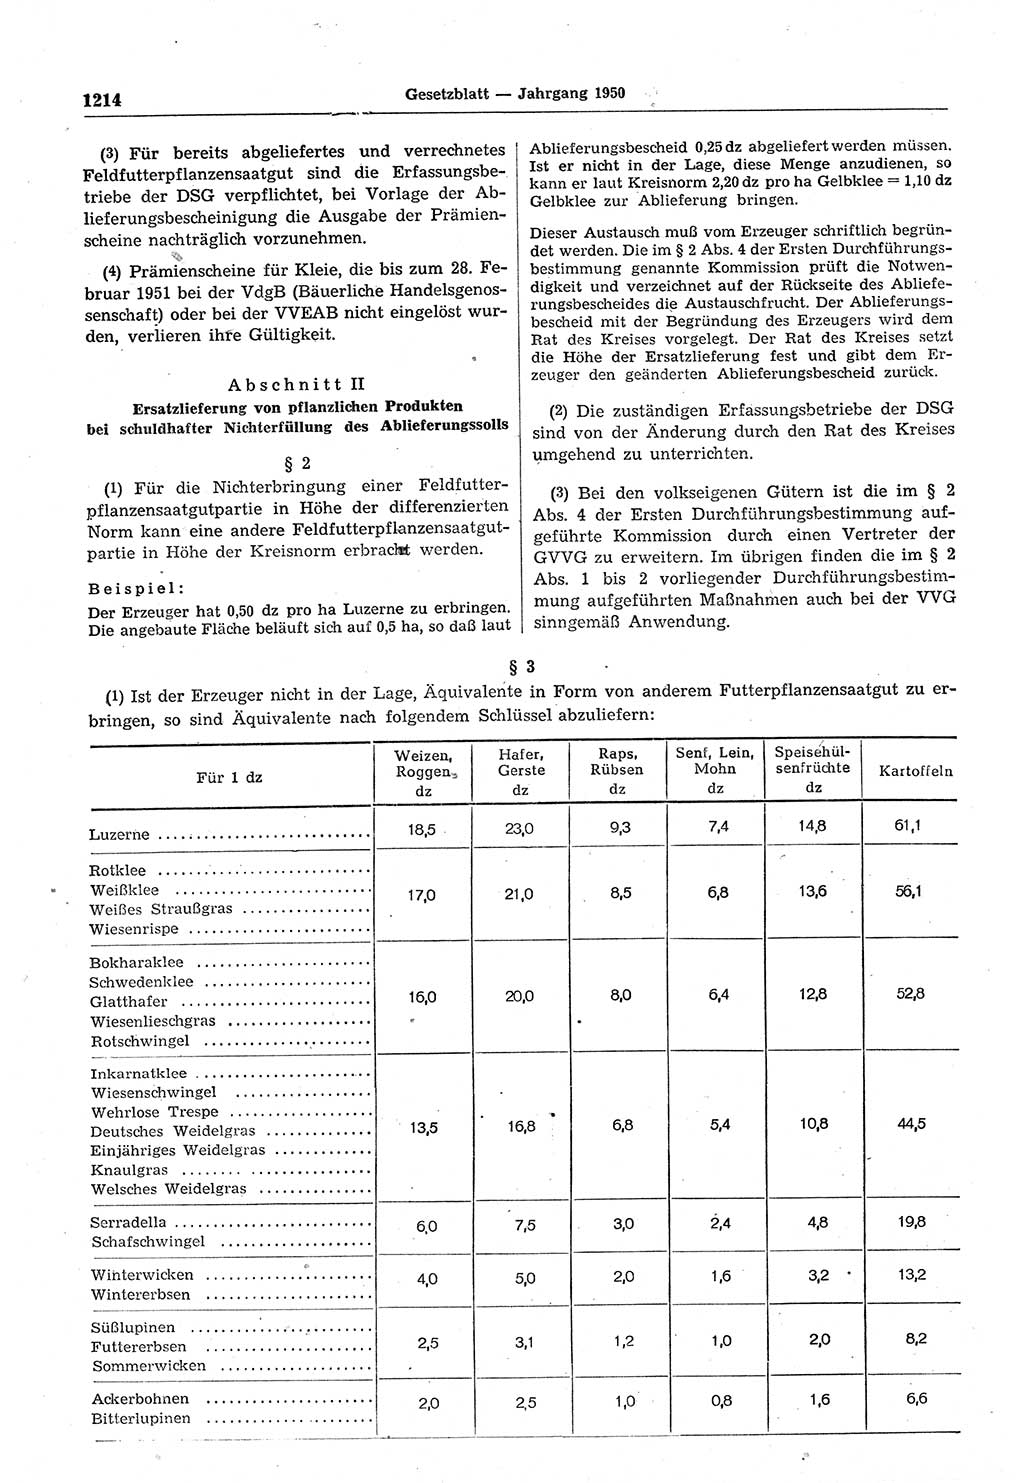 Gesetzblatt (GBl.) der Deutschen Demokratischen Republik (DDR) 1950, Seite 1214 (GBl. DDR 1950, S. 1214)